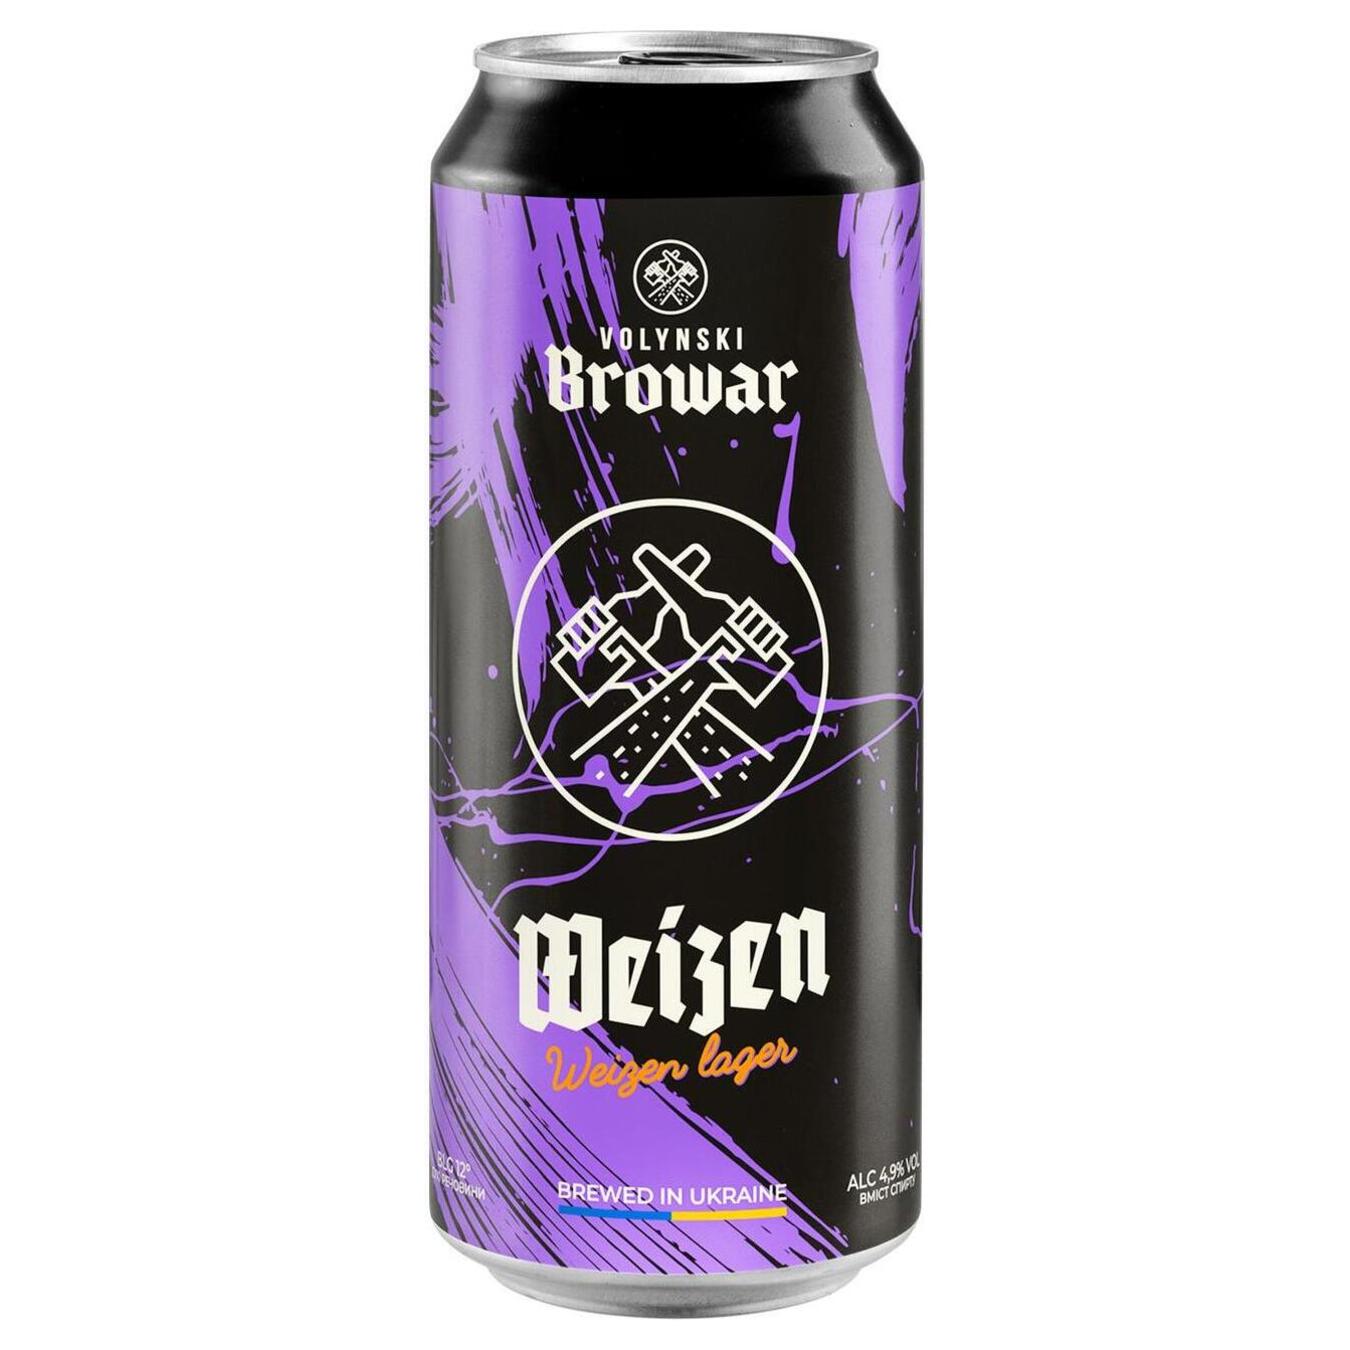 Пиво Волинський Бровар Weizen світле пшеничне нефільтроване 4,9% 0,5л